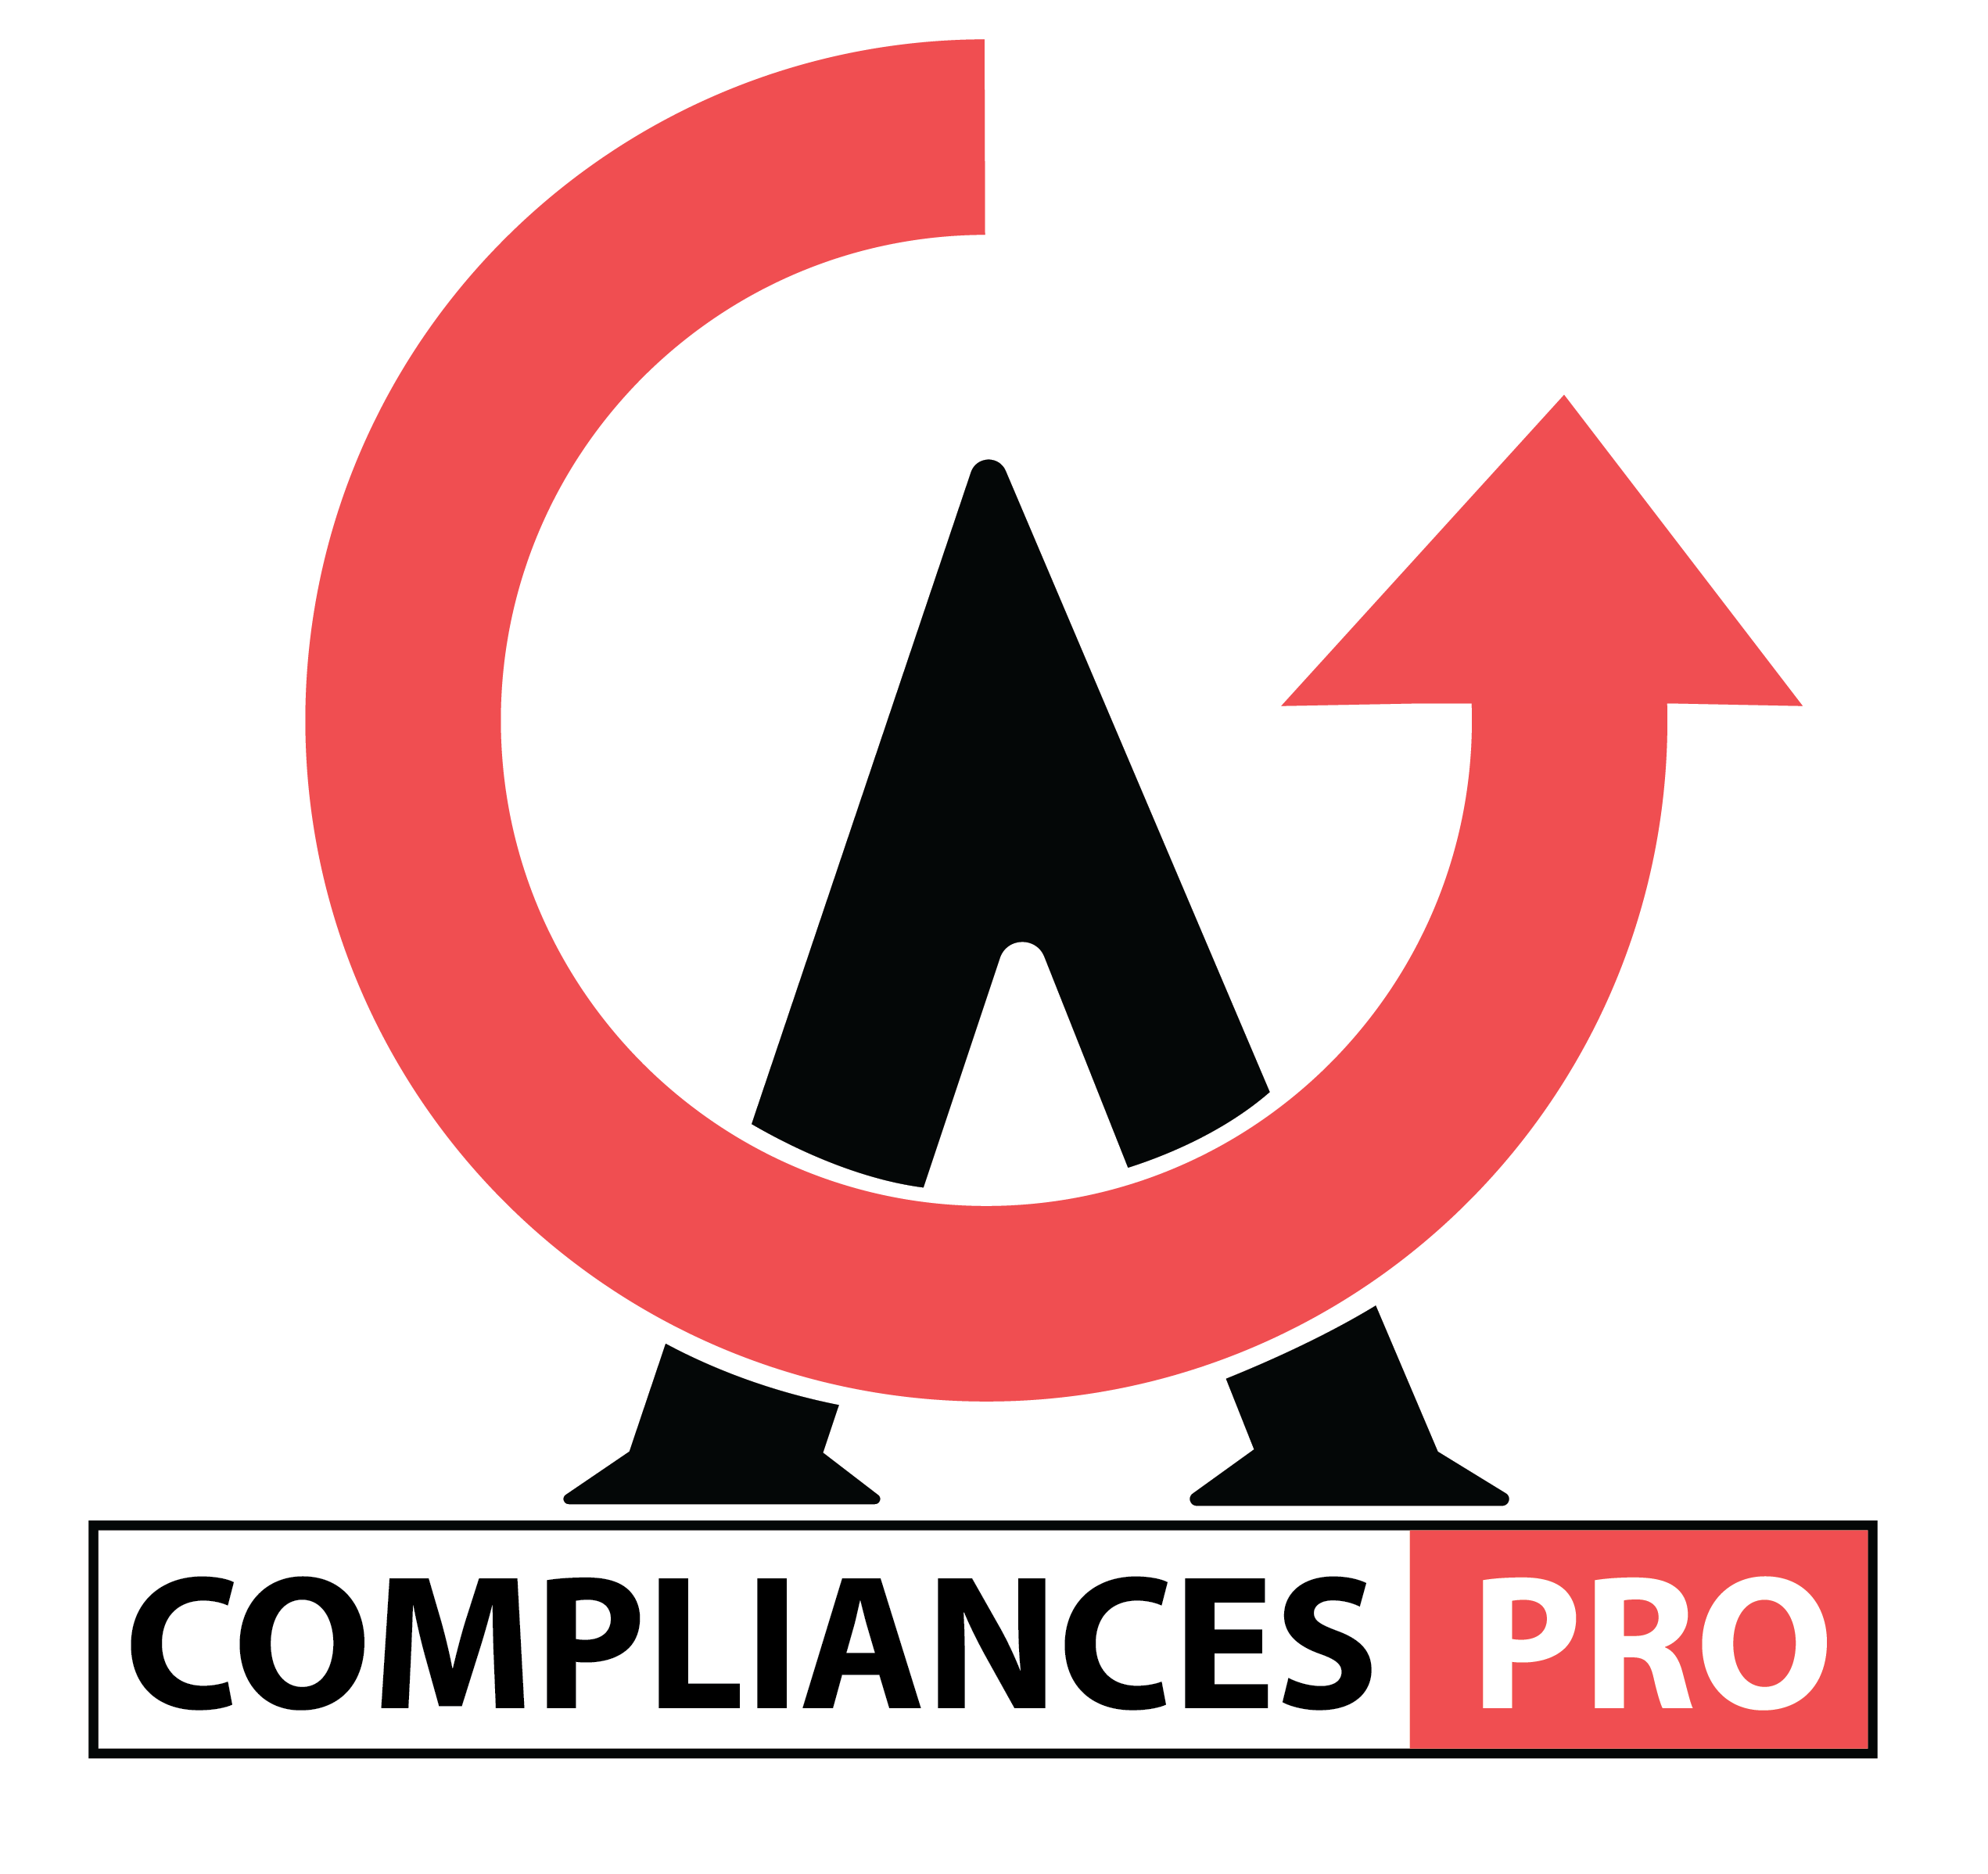 Compliances PRO logo